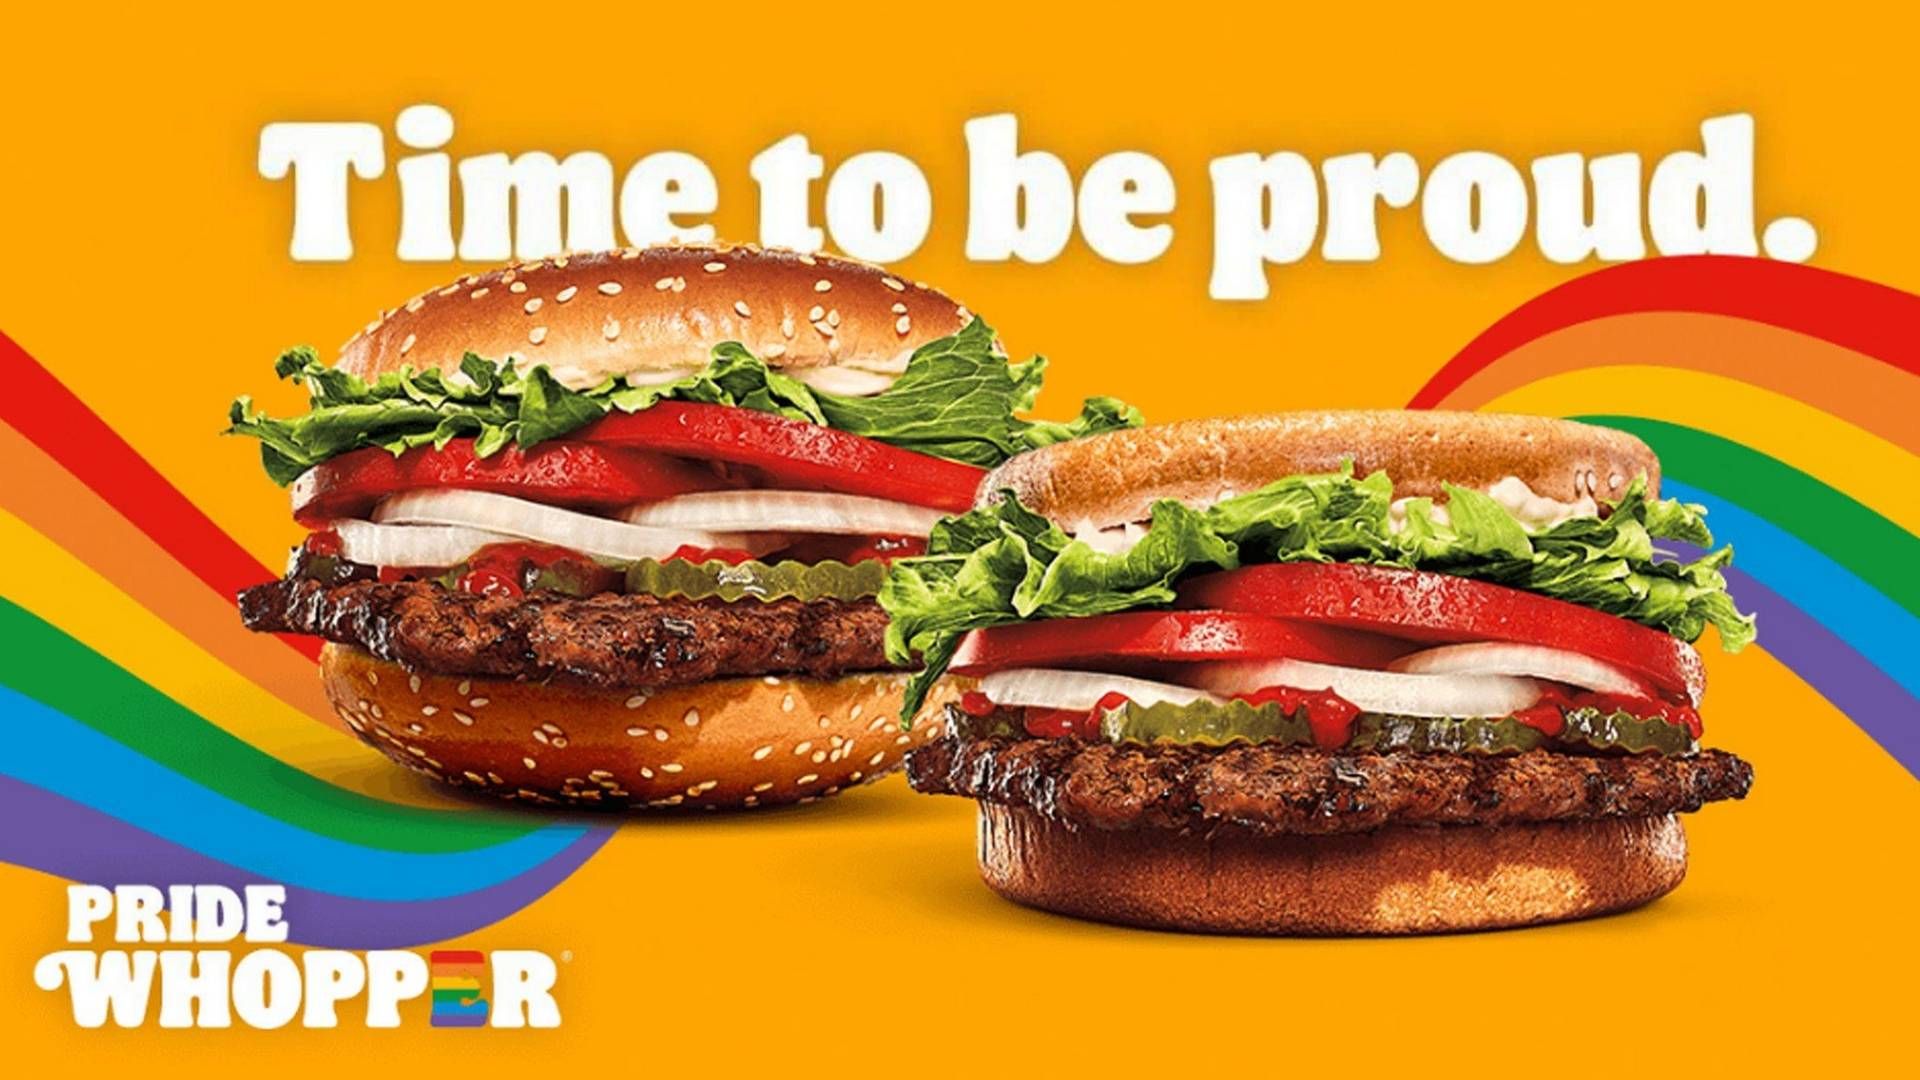 Pride Whopperen fra Burger King har den samme del af burgerbollen som top og bund. | Foto: Burger King PR